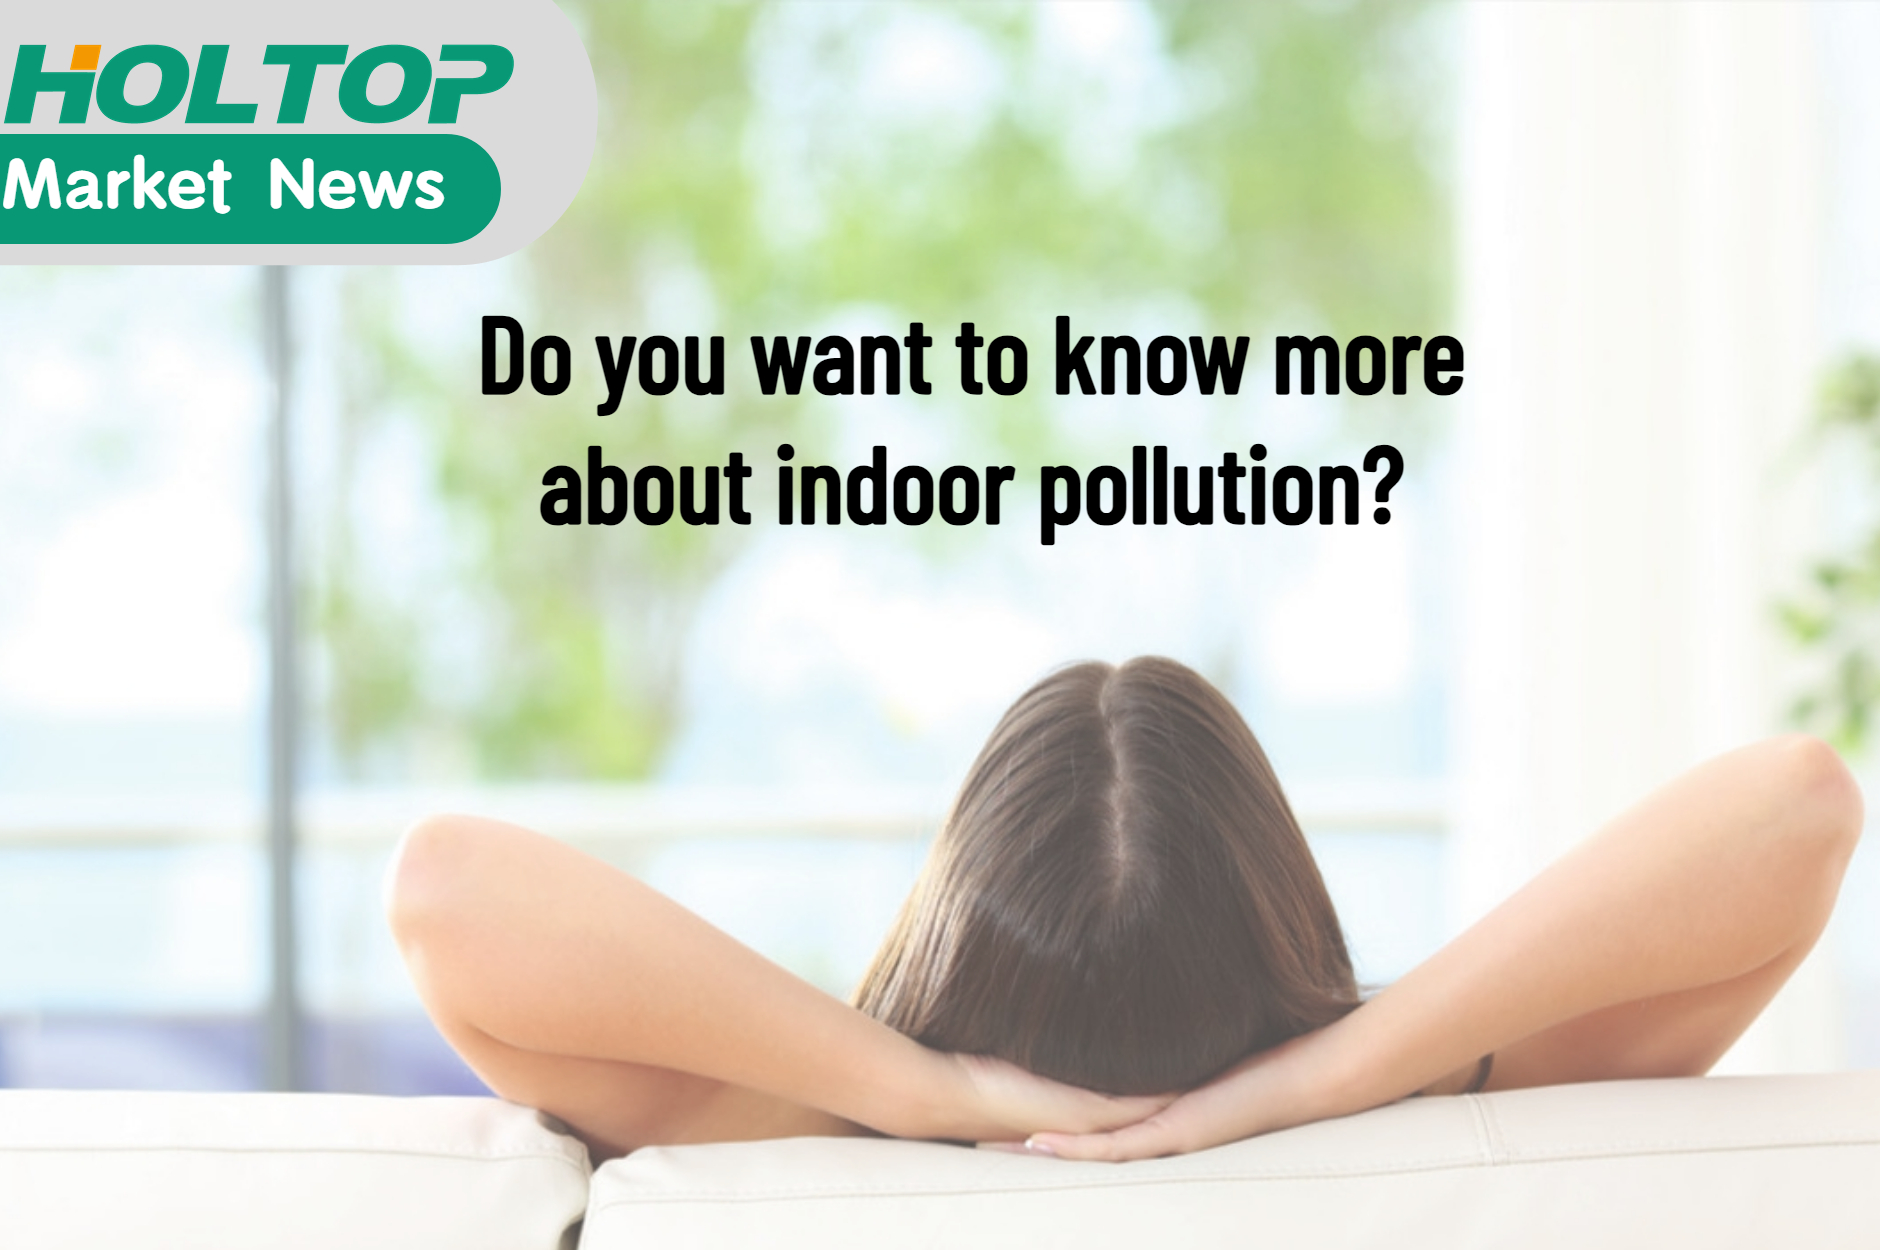 Хотите узнать больше о загрязнении воздуха в помещении?